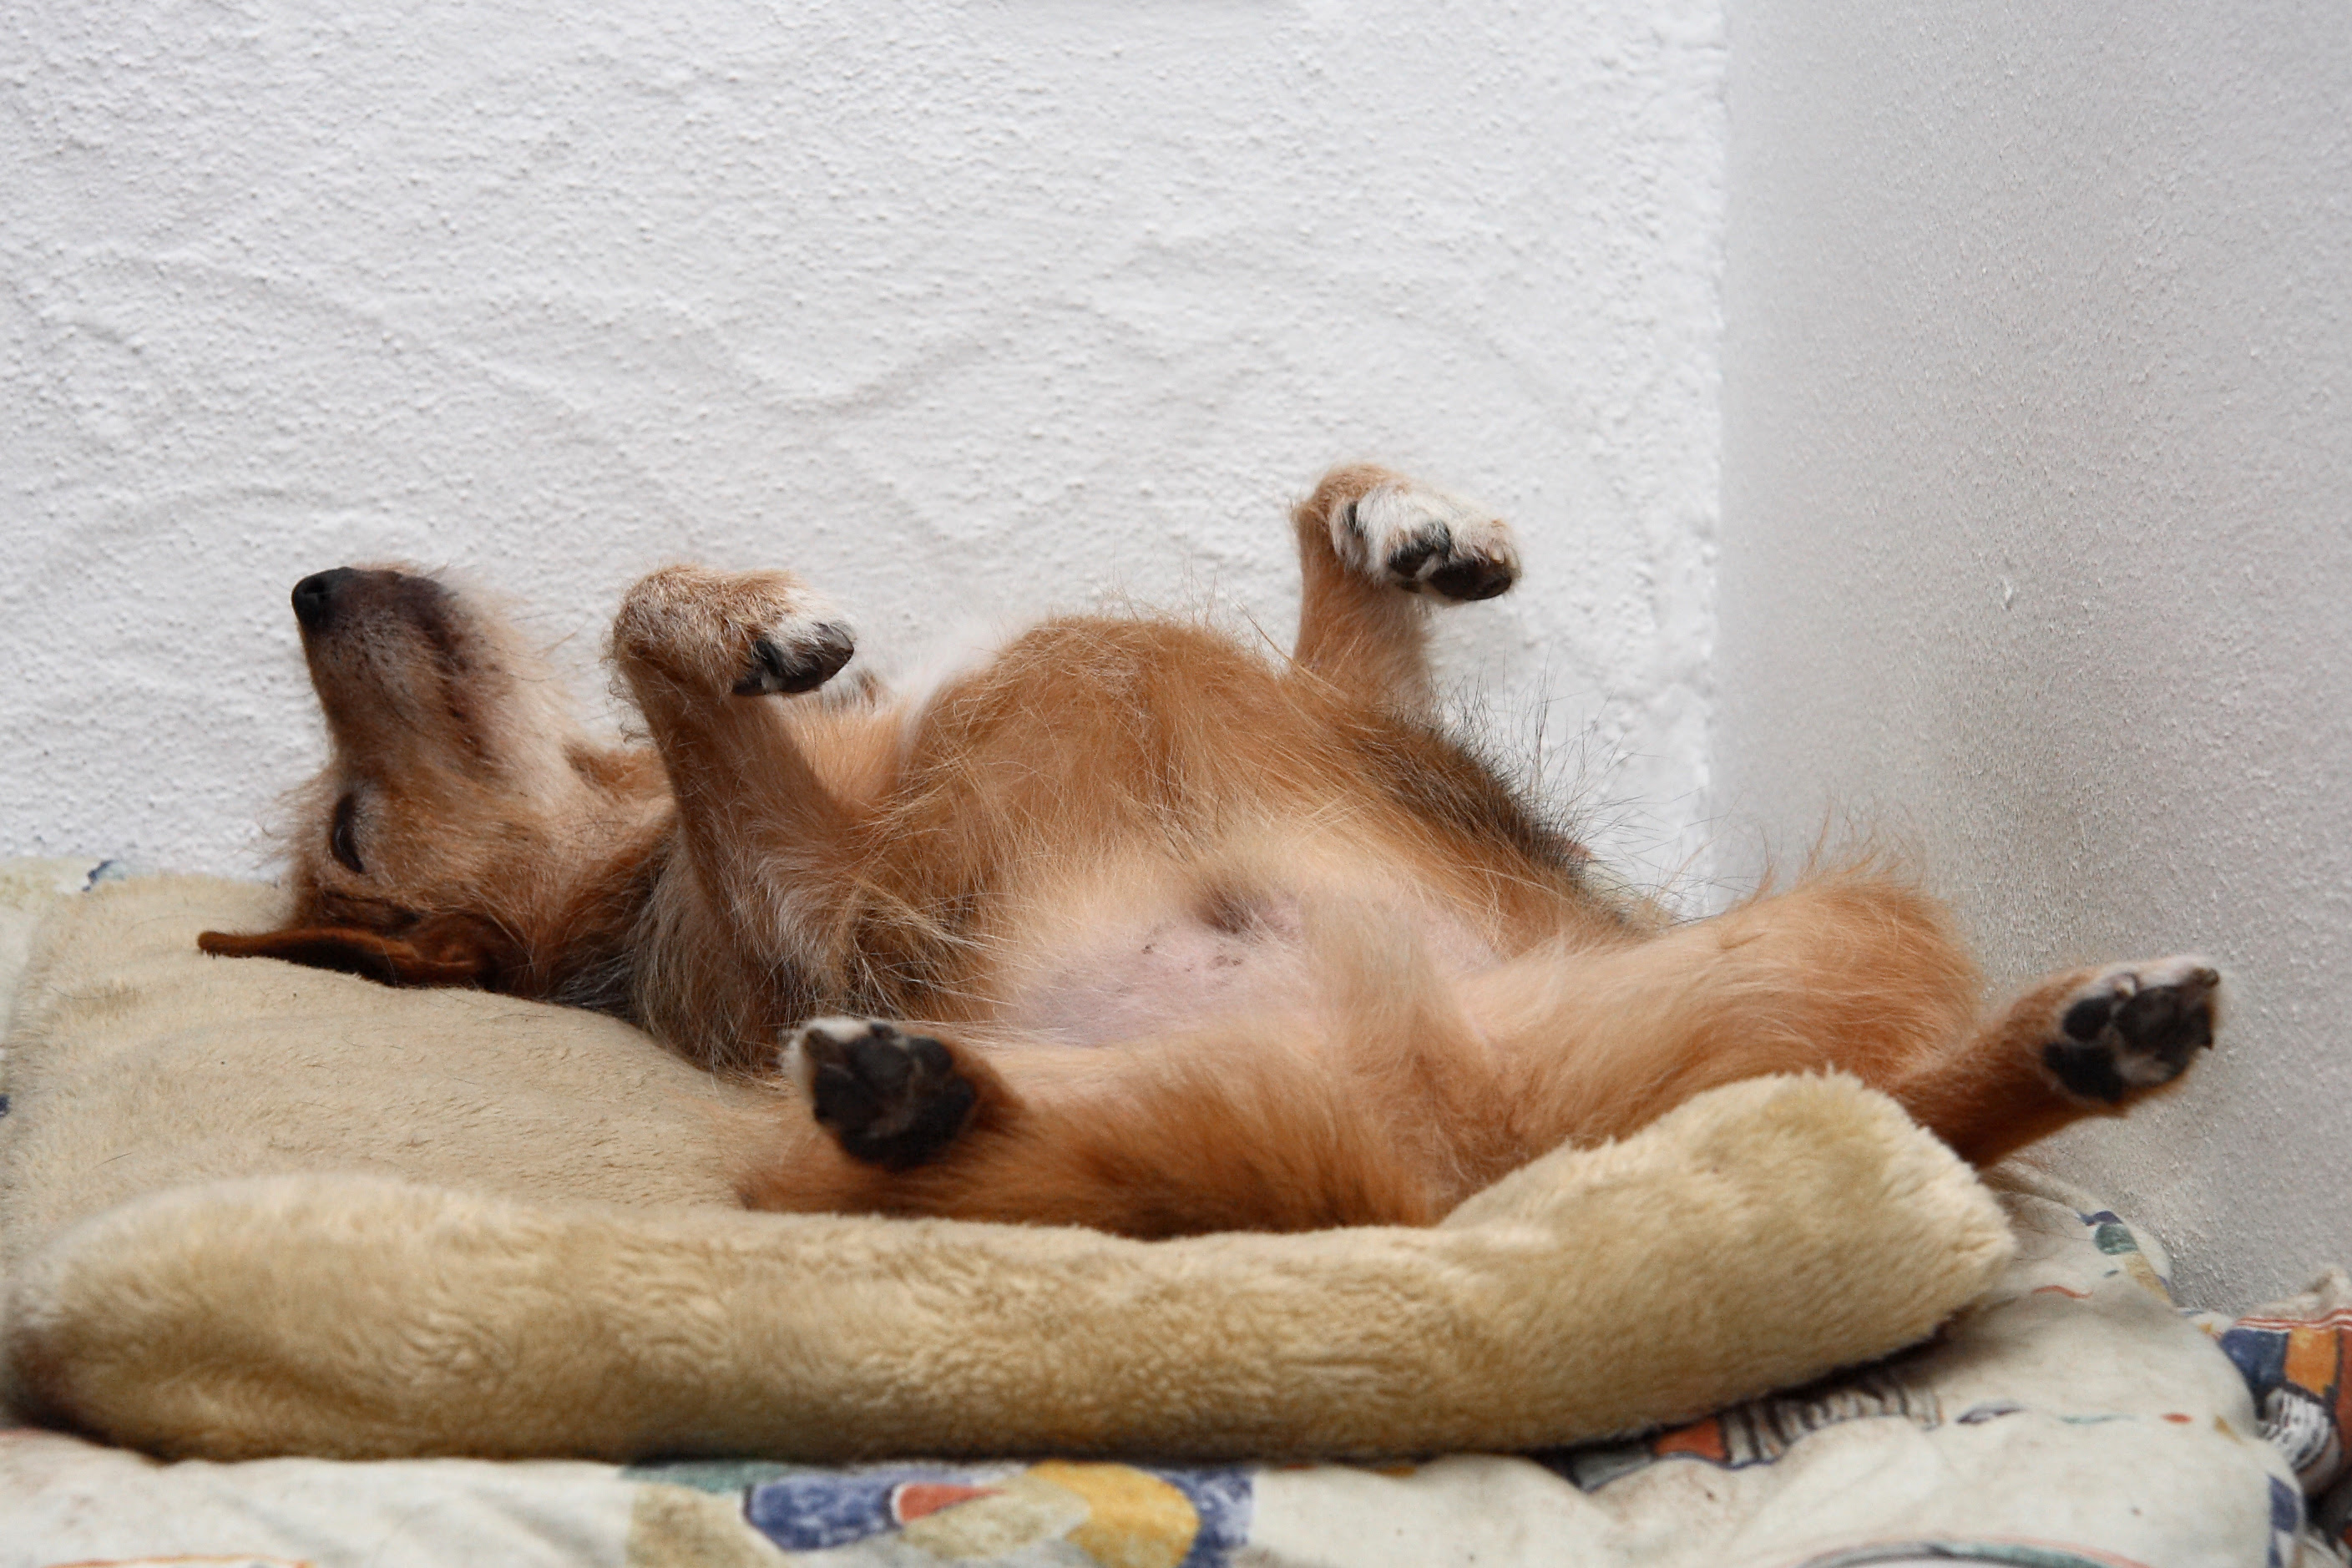 Where does your dog sleep? | Doggerel